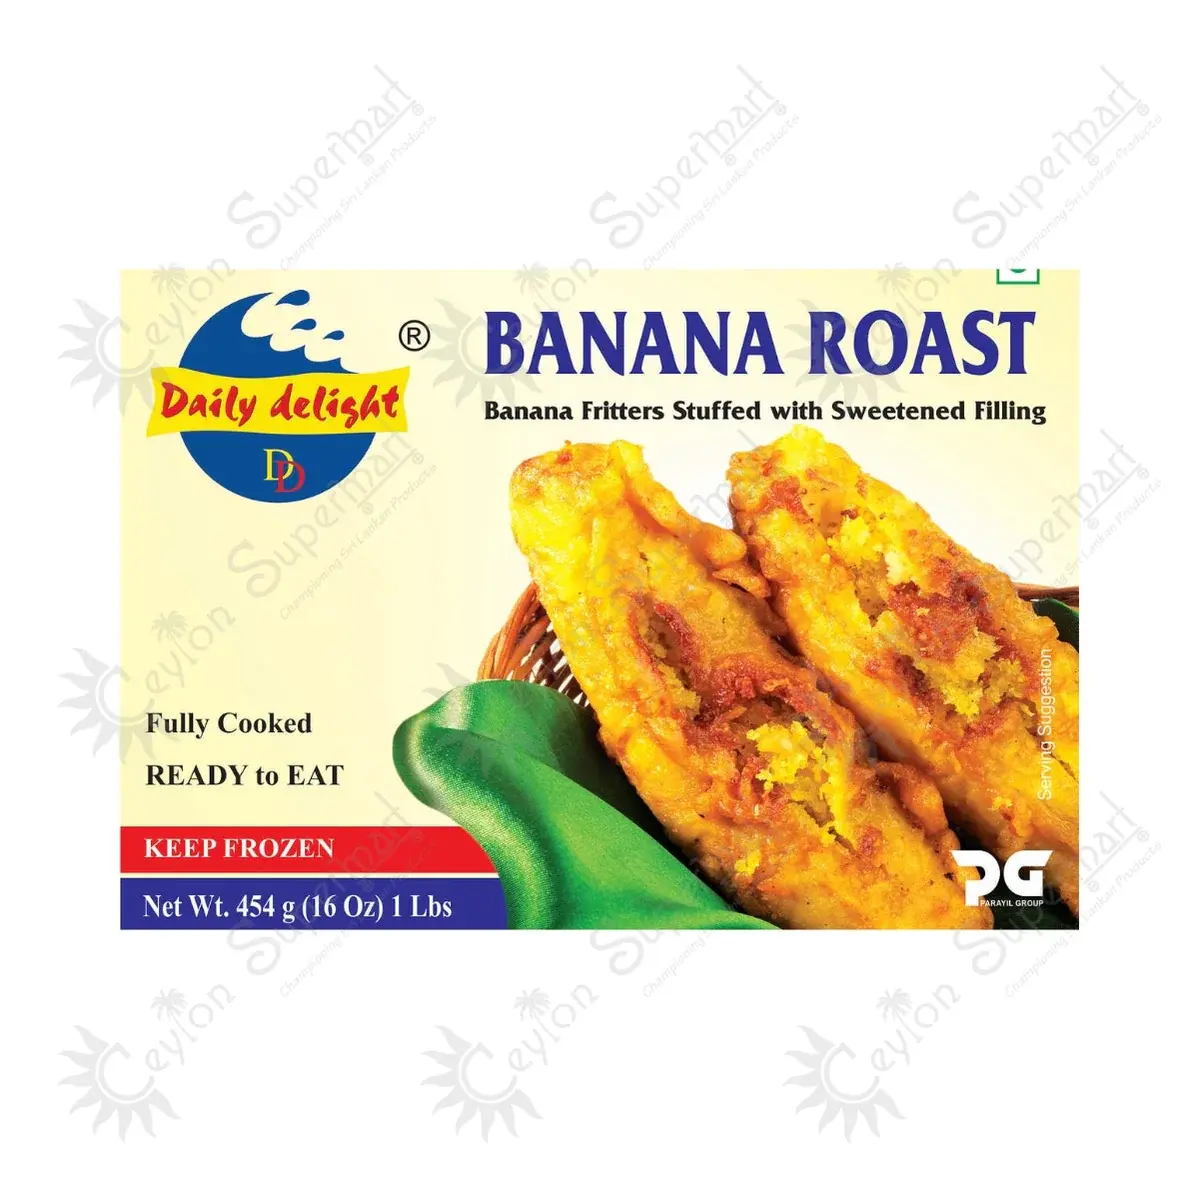 Daily Delight Banana Roast